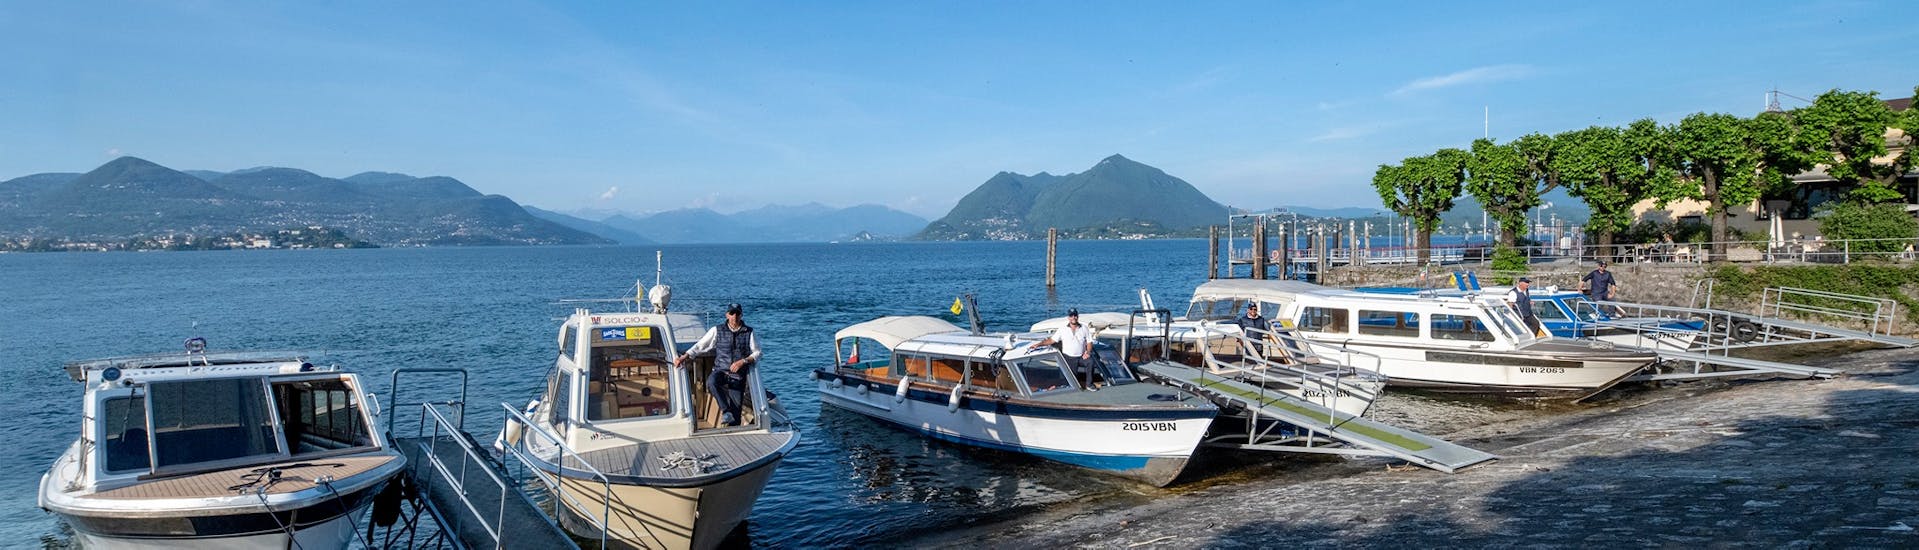 Vue des bateaux utilisés pour le transfert en bateau de Stresa à Isola Madre, Isola Pescatori et Isola Bella avec Lake Tours Stresa.